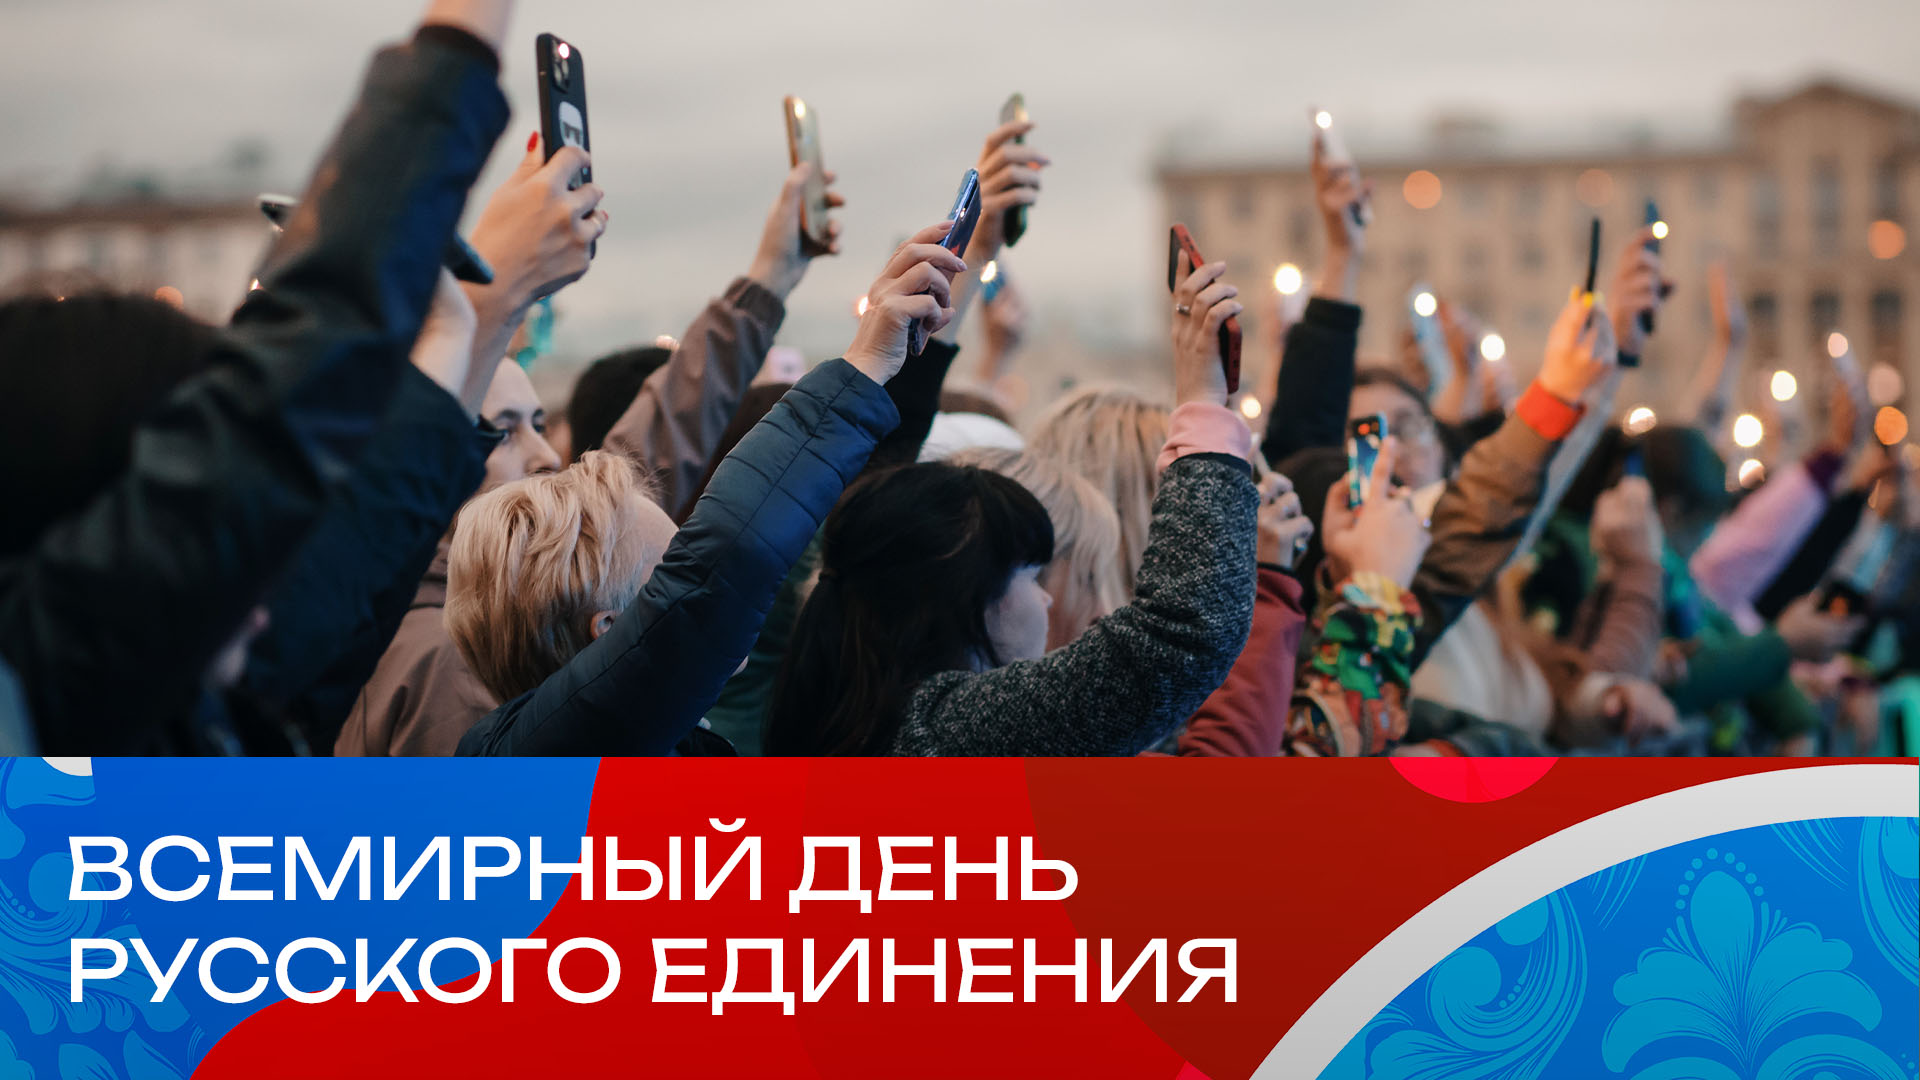 фото: В Москве отпразднуют Всемирный день русского единения